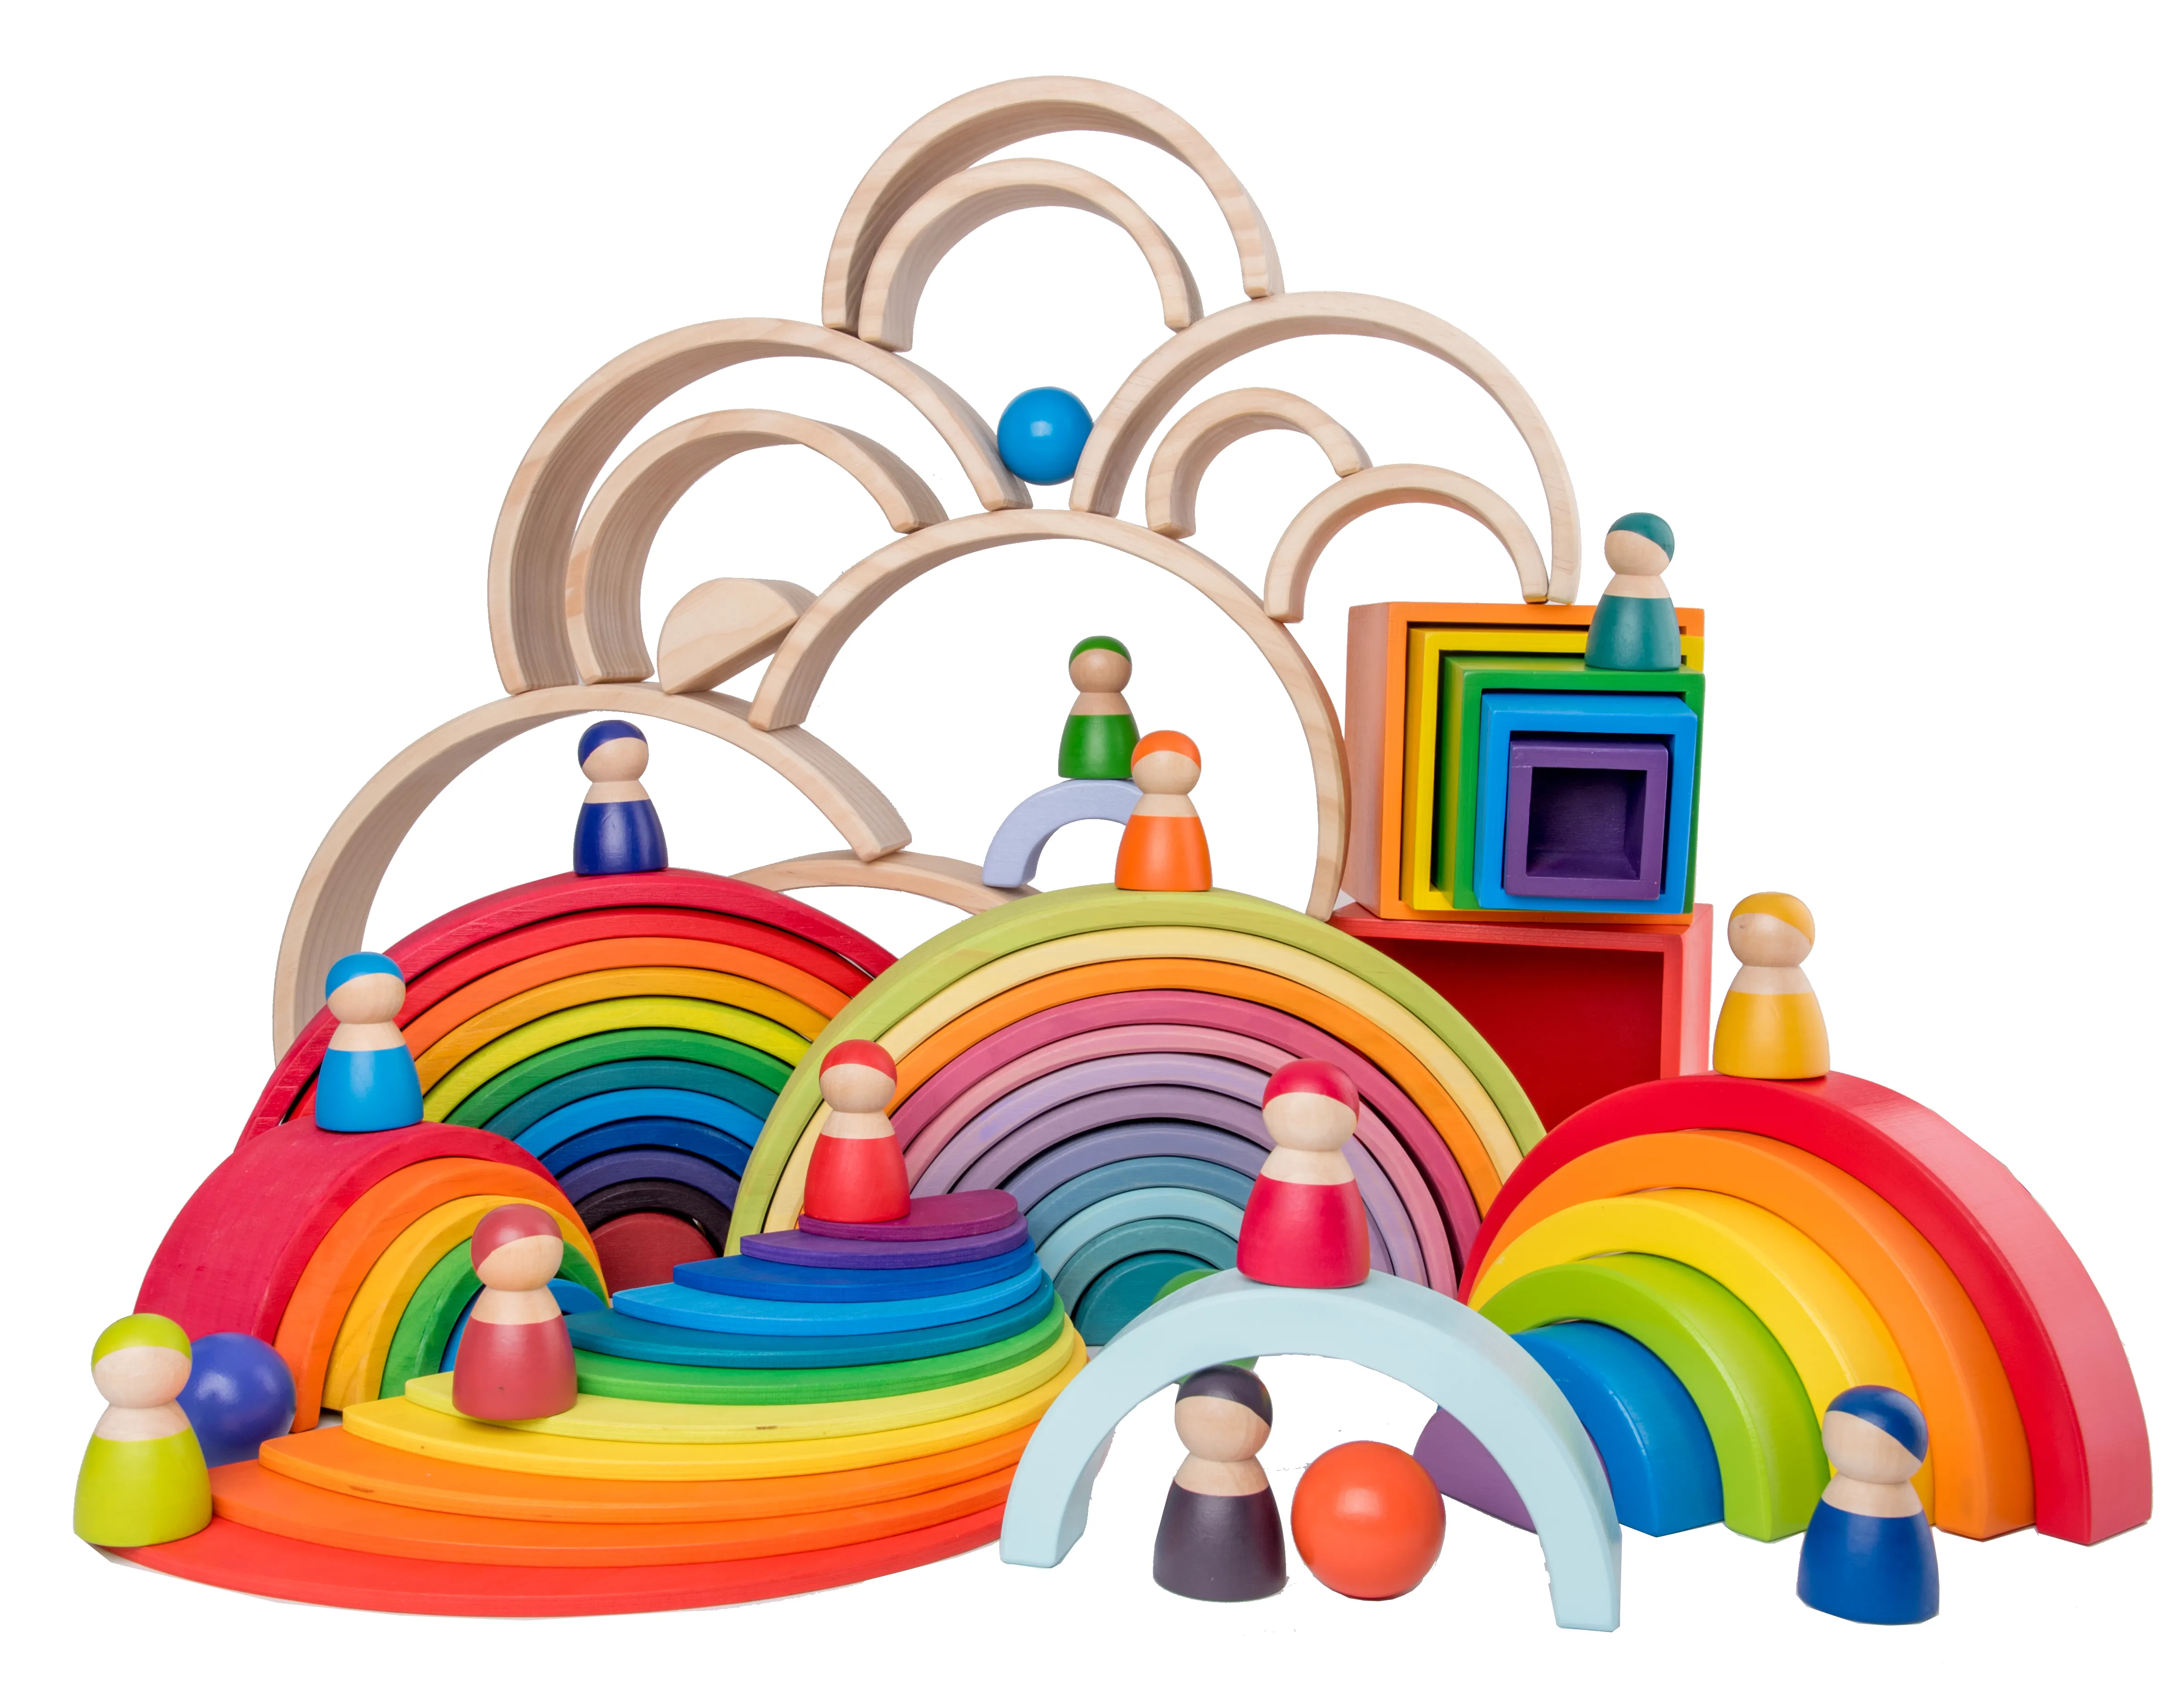 Bé Lớn Cầu Vồng Stacker Đồ Chơi Bằng Gỗ Cho Trẻ Em Sáng Tạo Cầu Vồng Khối Xây Dựng Montessori Giáo Dục Đồ Chơi Trẻ Em